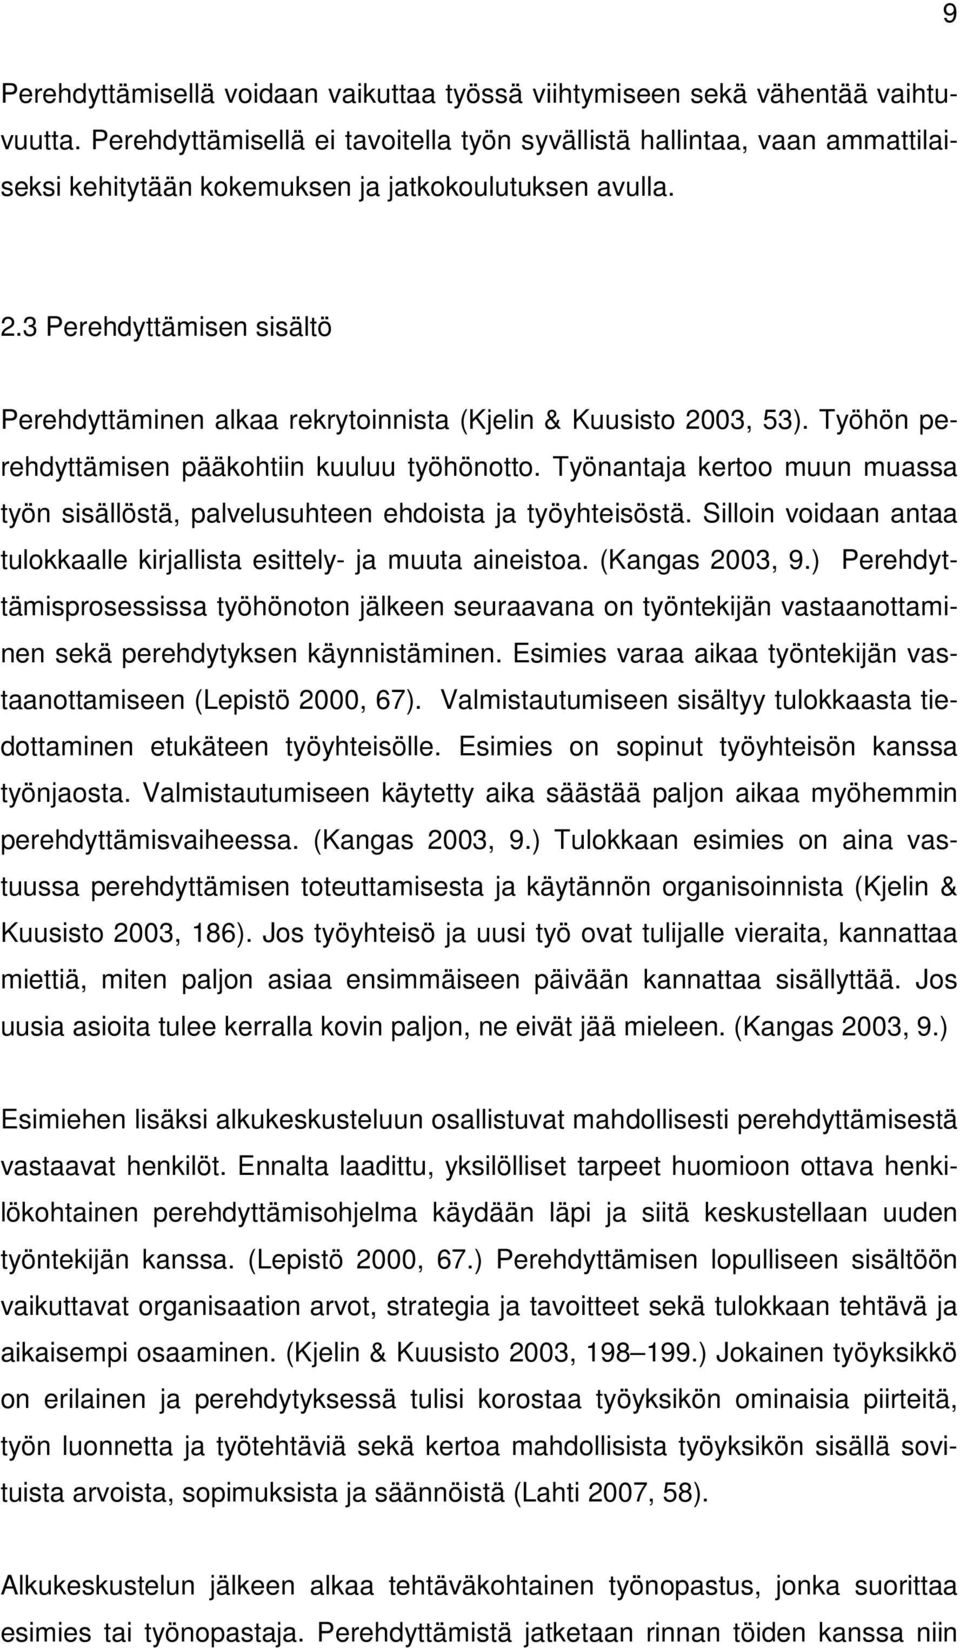 3 Perehdyttämisen sisältö Perehdyttäminen alkaa rekrytoinnista (Kjelin & Kuusisto 2003, 53). Työhön perehdyttämisen pääkohtiin kuuluu työhönotto.